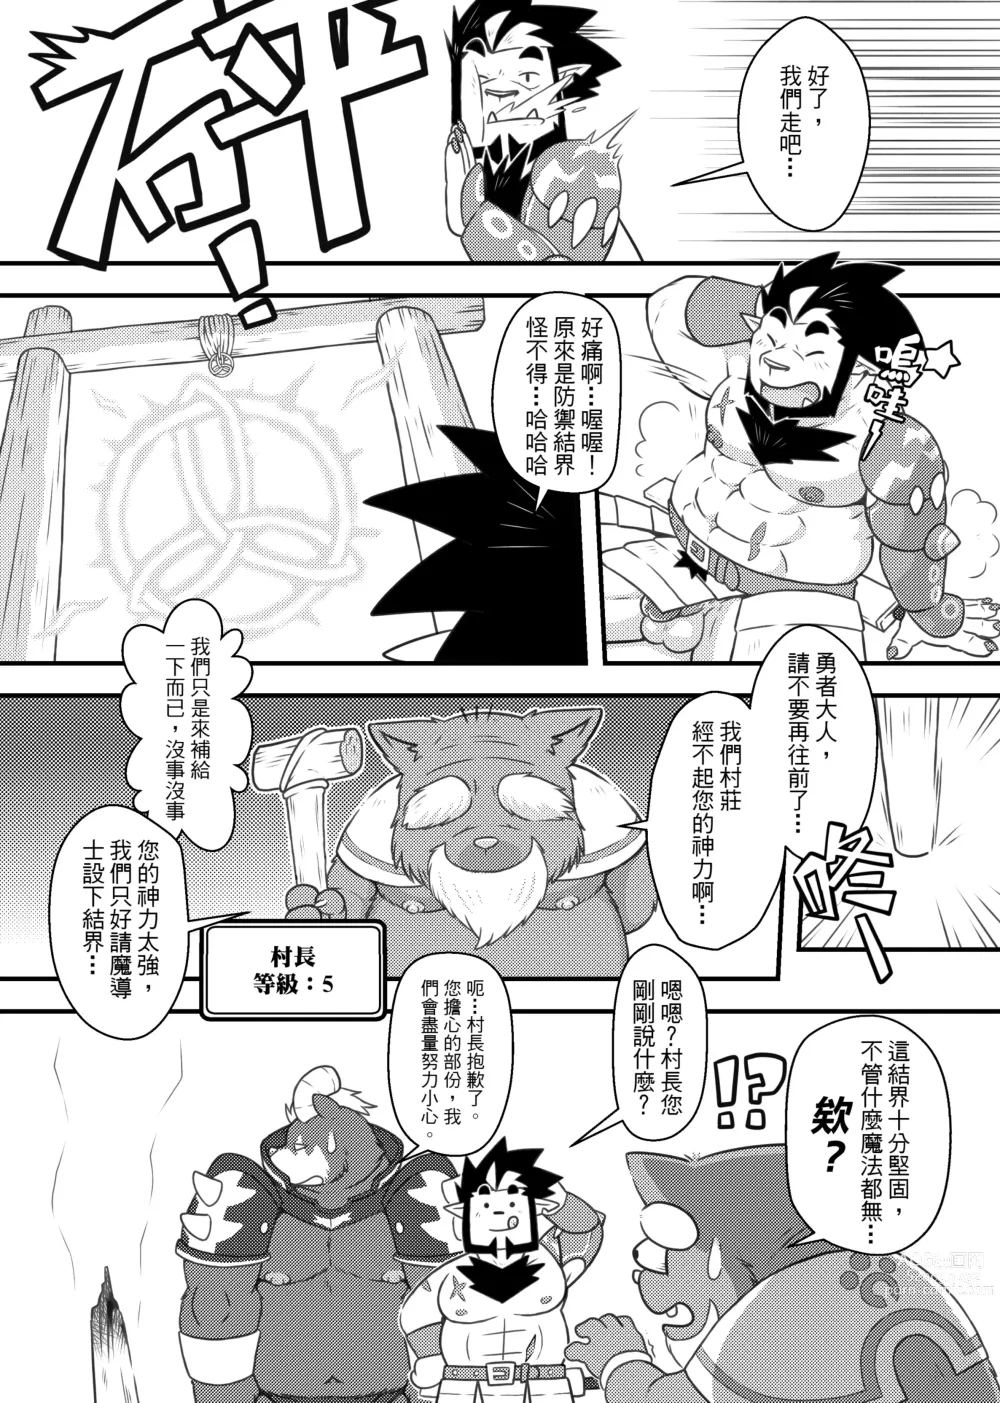 Page 7 of doujinshi 勇者的大小只有魔王塞得下1